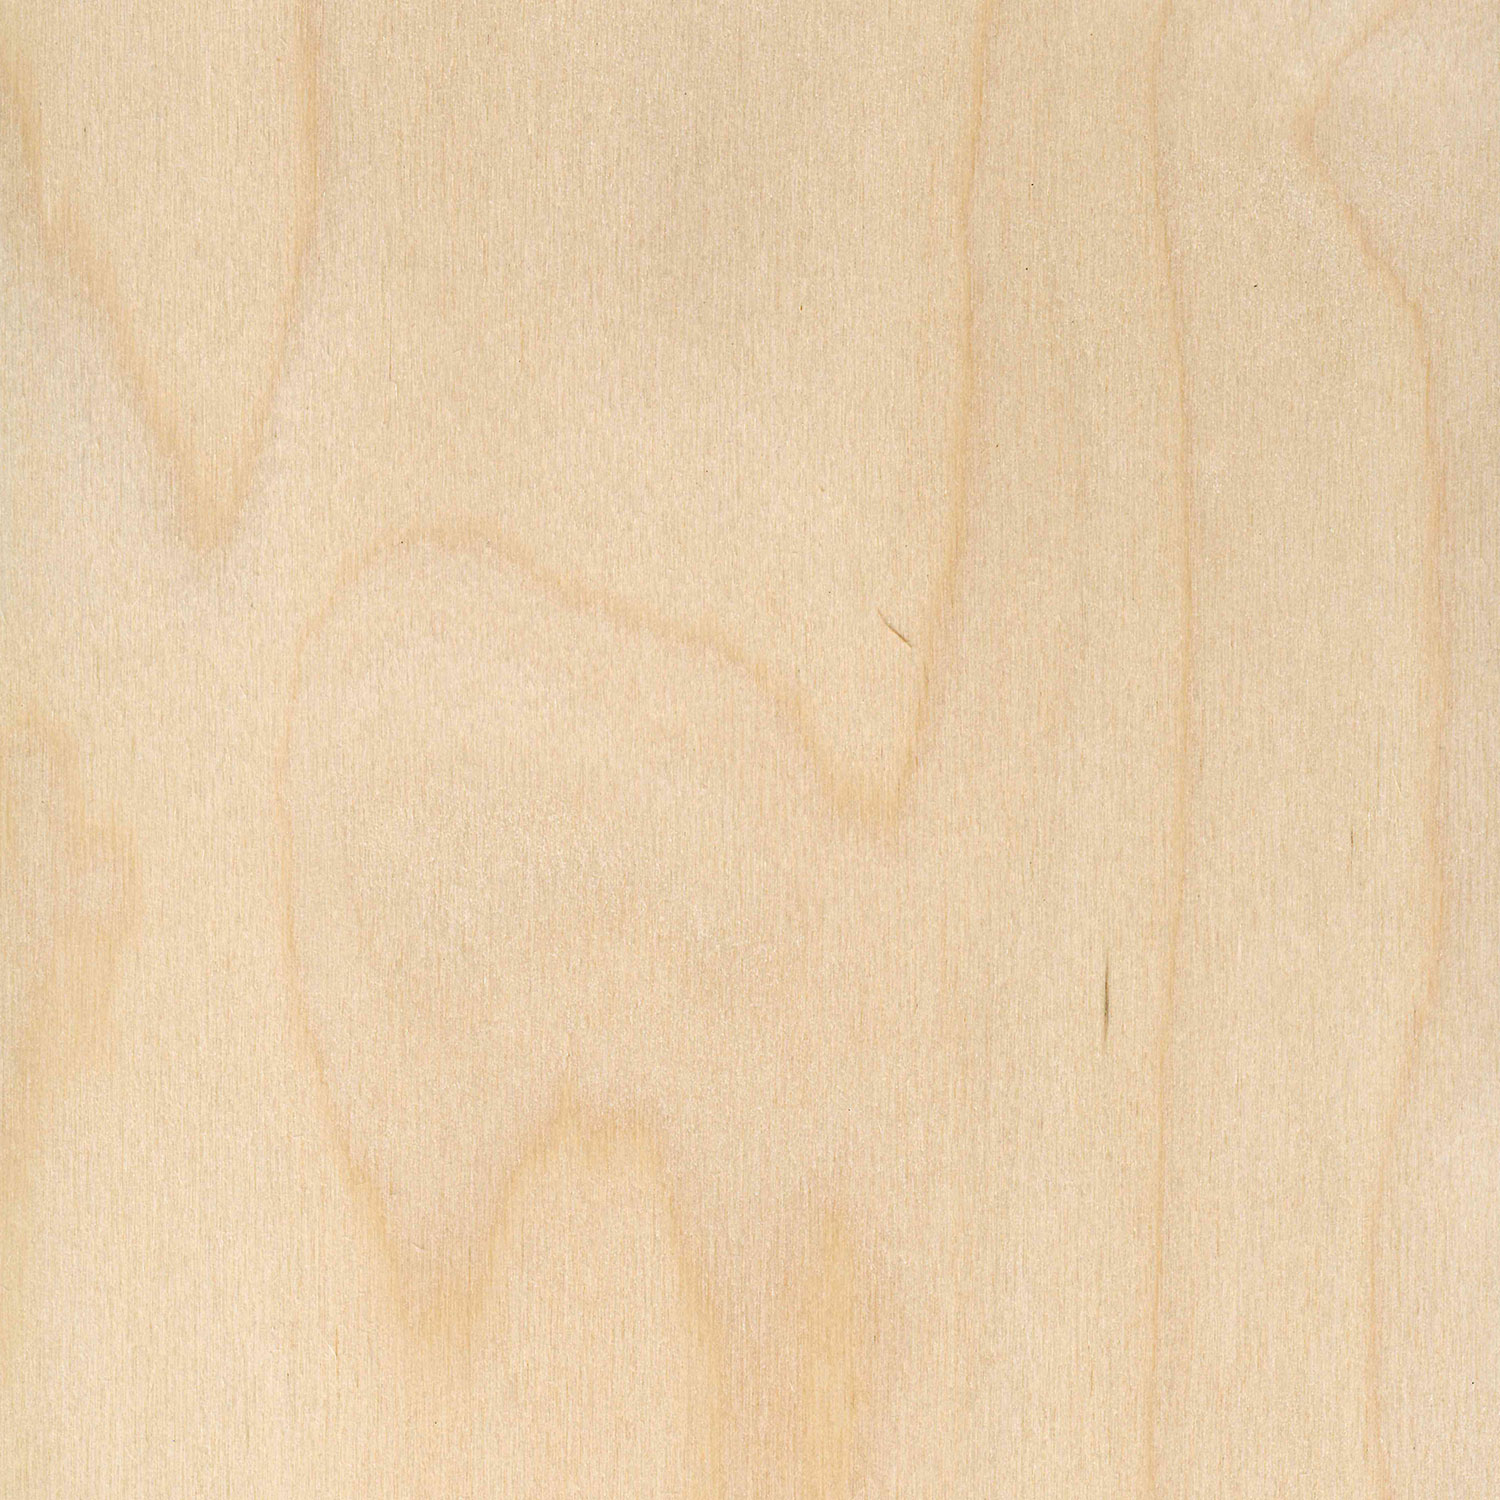 Veneer Express Layons peeled birch, rotary cut veneer